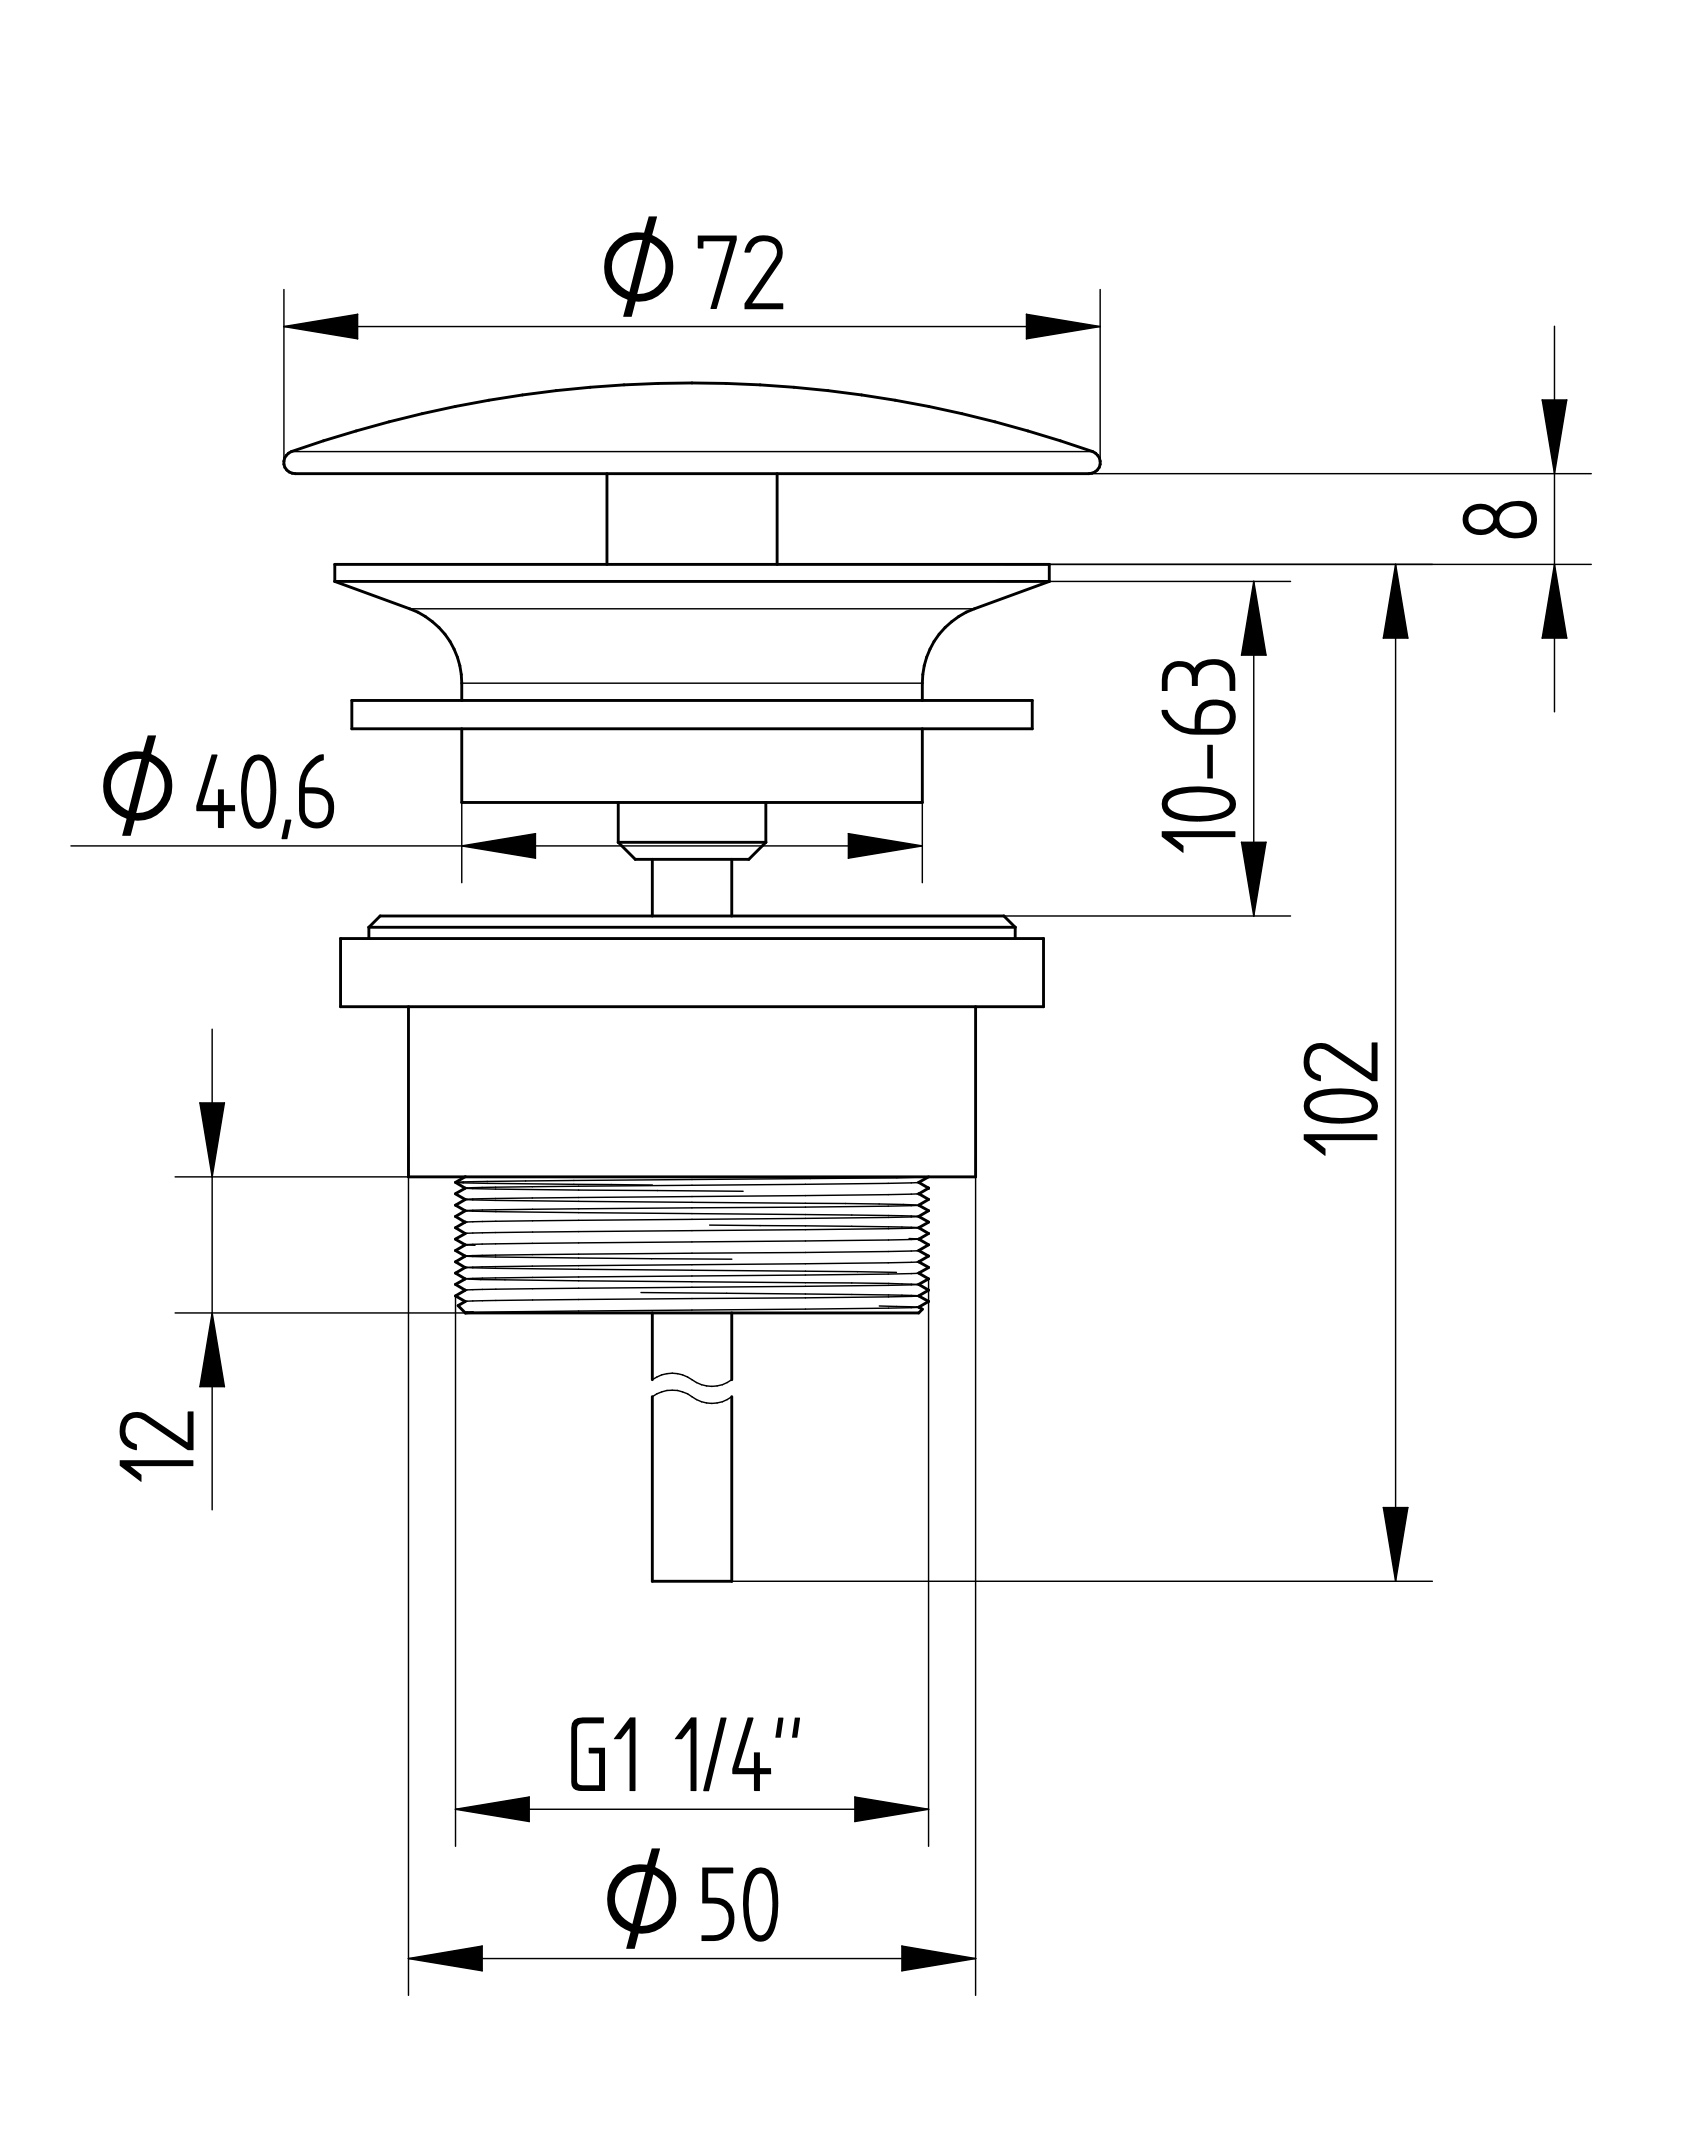 Avenraius Design-Schaftventil 1 ¼" rund ohne Verschluss, Ø 72 mm (900 4203 010)